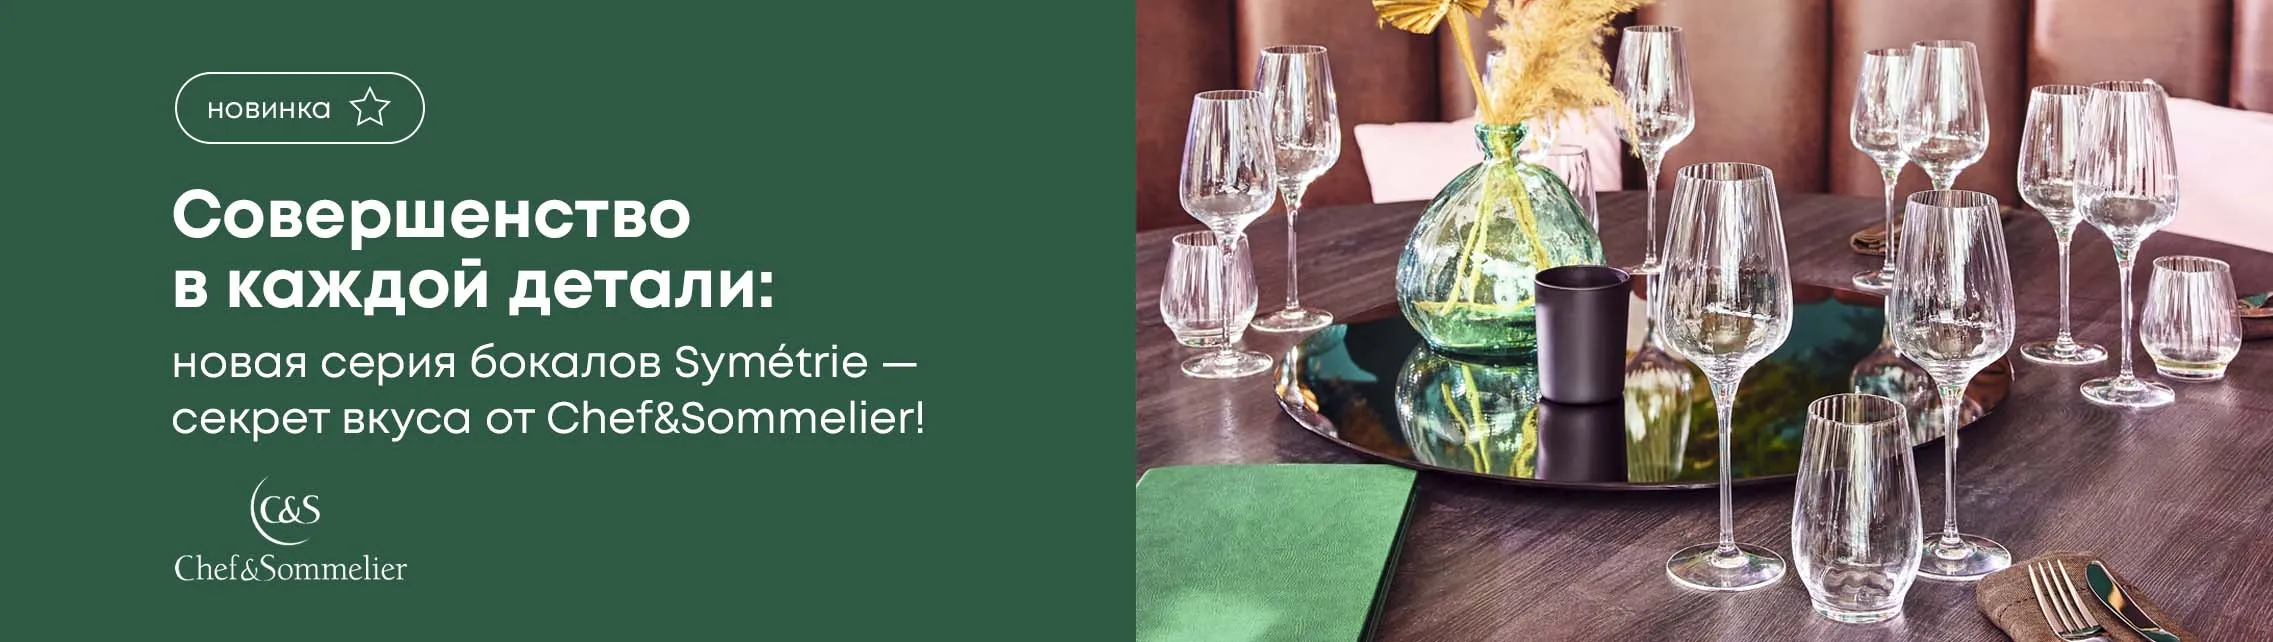 Совершенство в каждой детали: Новая серия бокалов Symétrie – секрет вкуса от Chef&Sommelier!